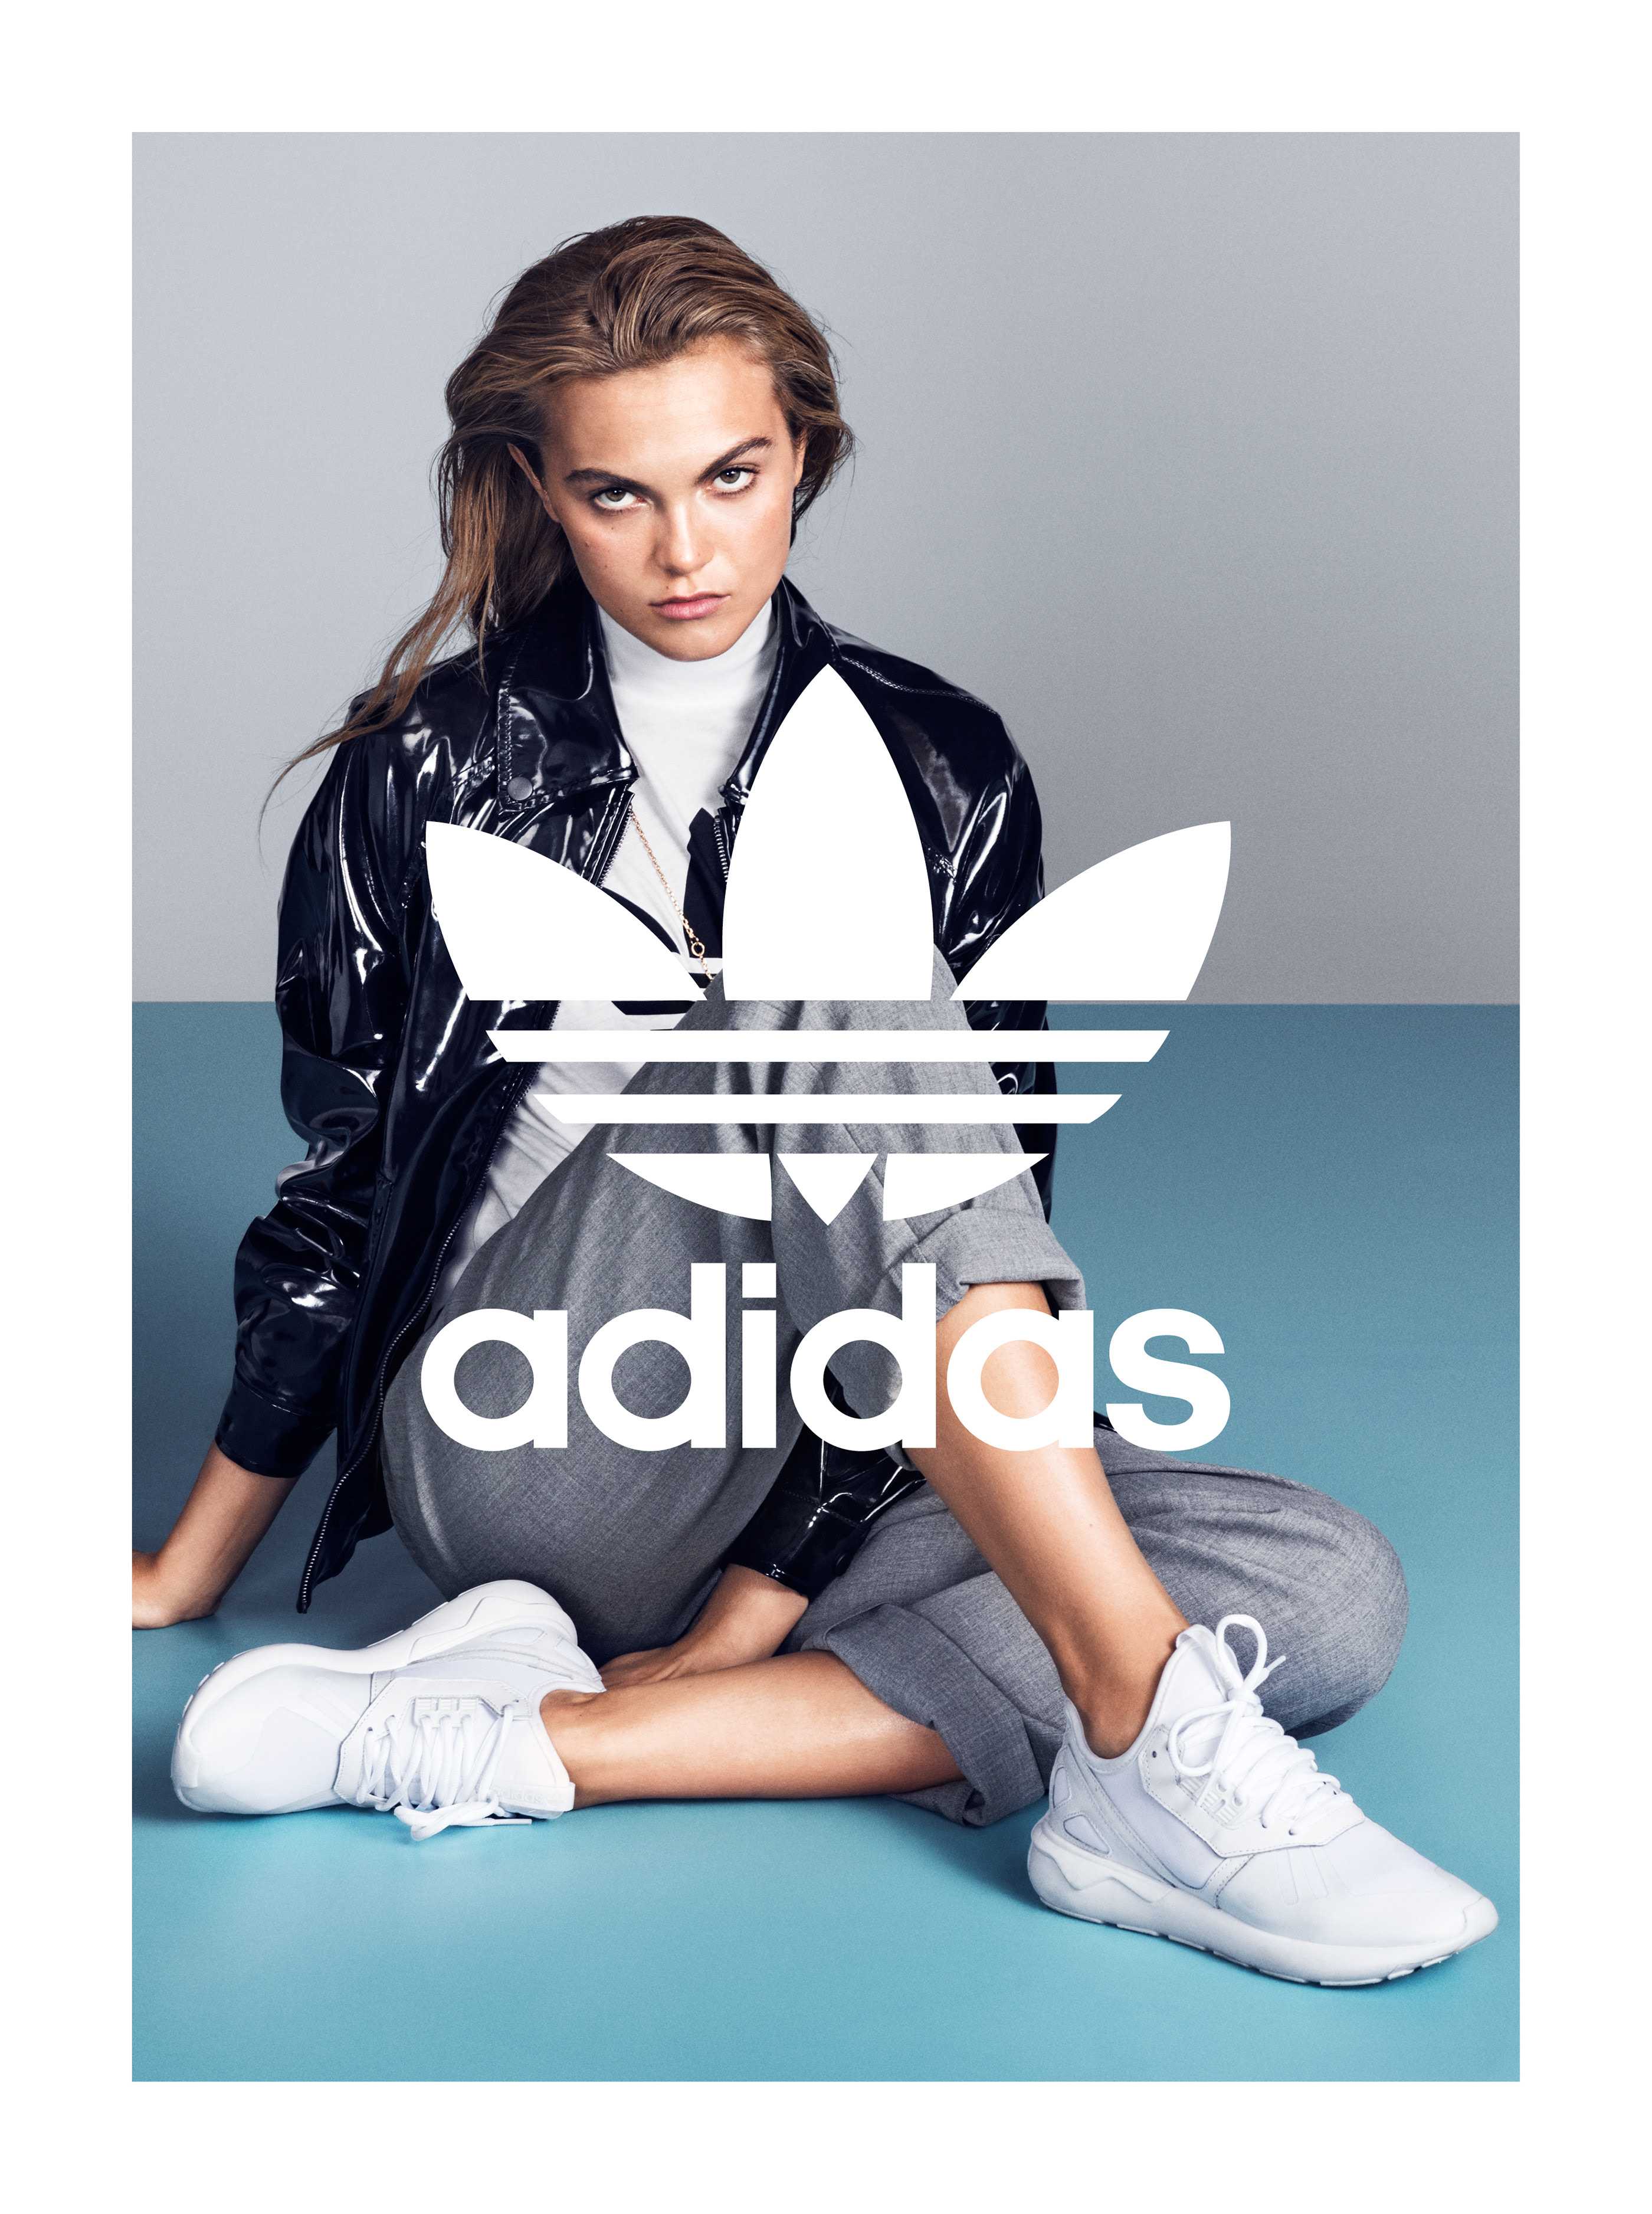 Лицо адидаса. Sportswear adidas модель. Реклама одежды адидас. Adidas реклама. Реклама спортивной одежды.